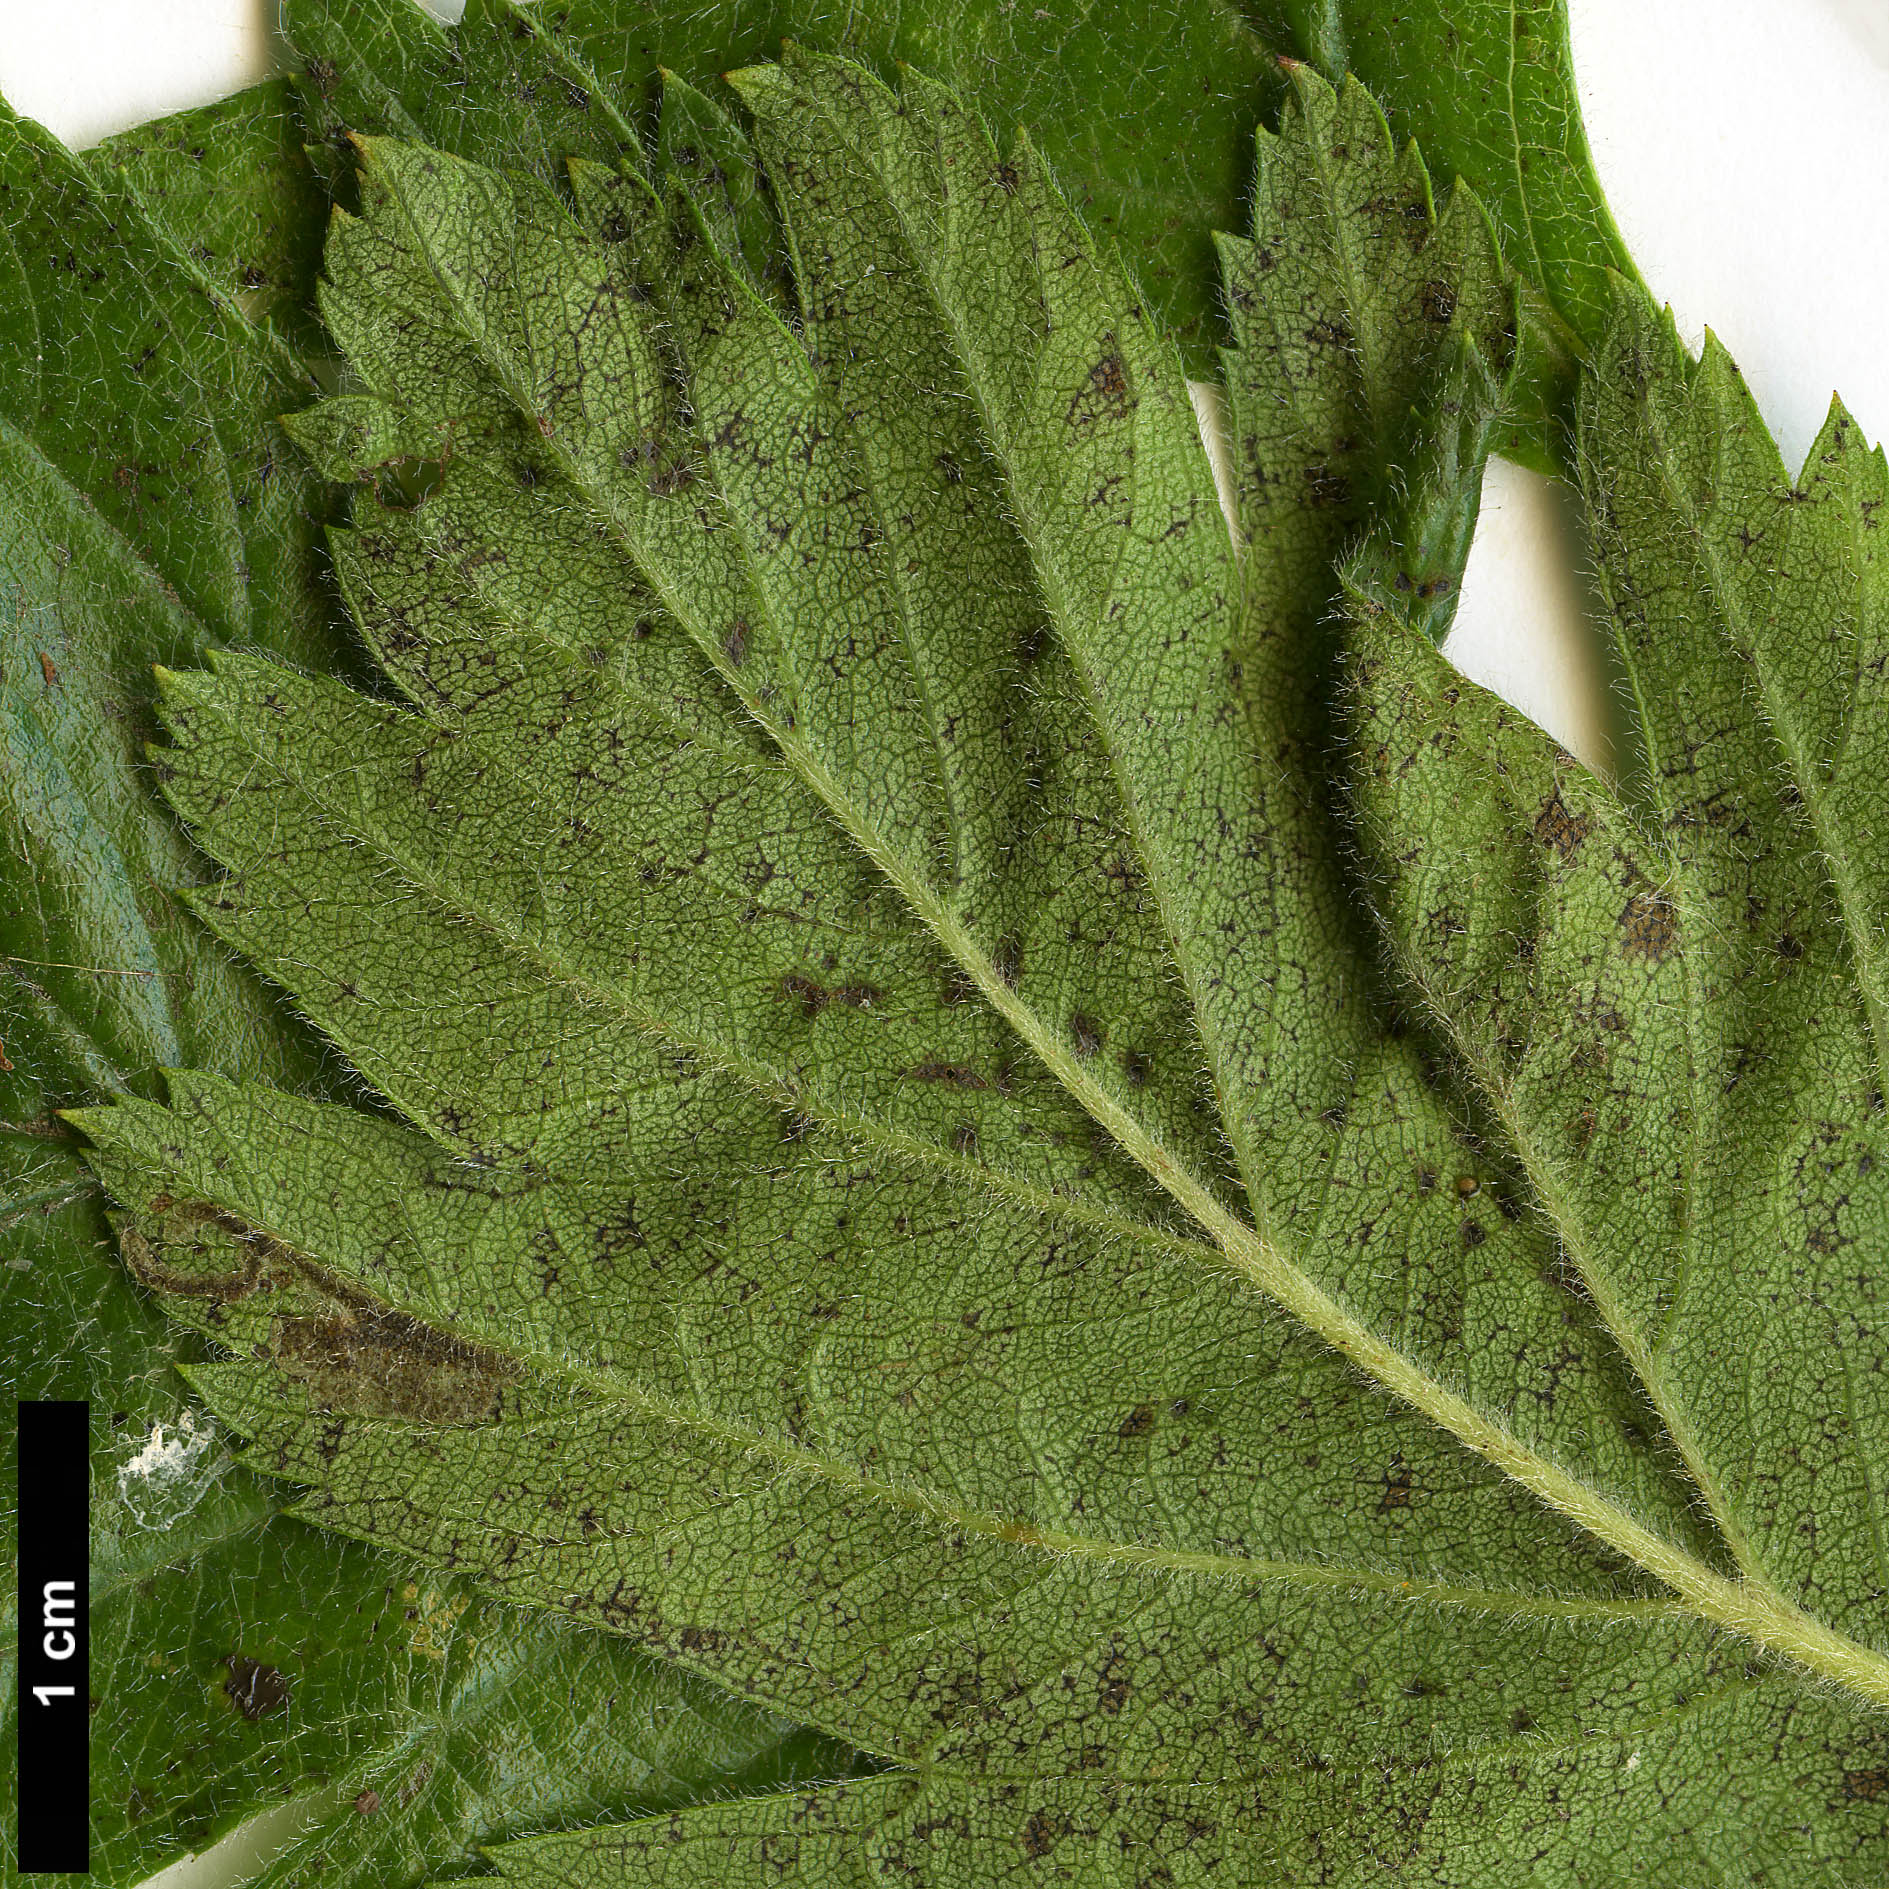 High resolution image: Family: Rosaceae - Genus: Crataegus - Taxon: ×dippelliana (C.tanacetifolia ×)